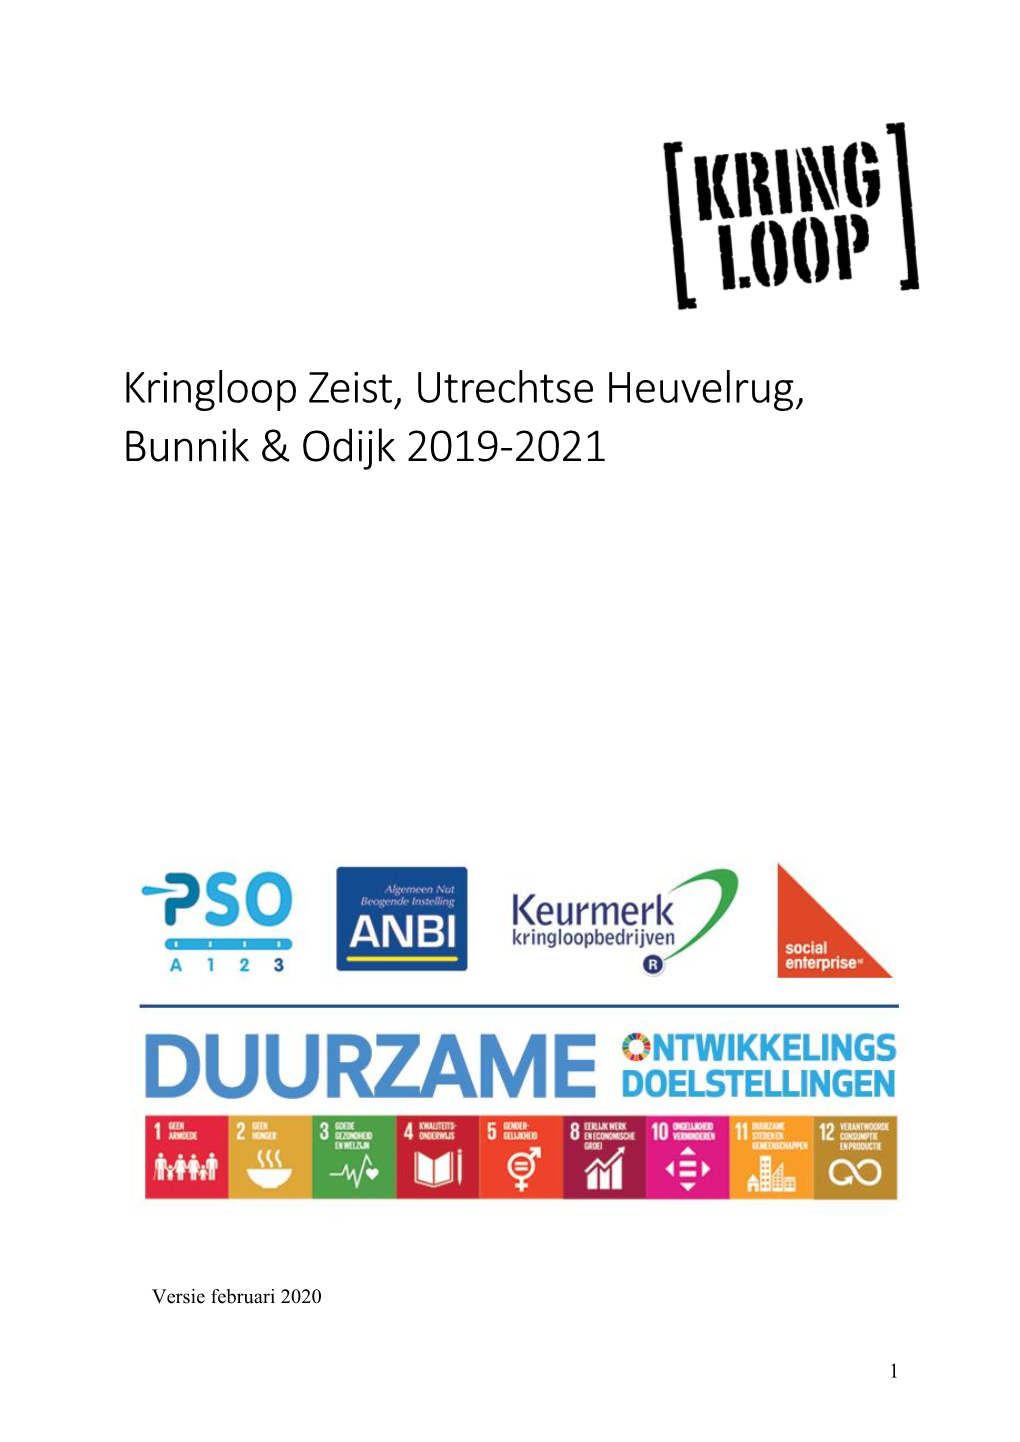 Kringloop Zeist, Utrechtse Heuvelrug, Bunnik & Odijk 2019-2021